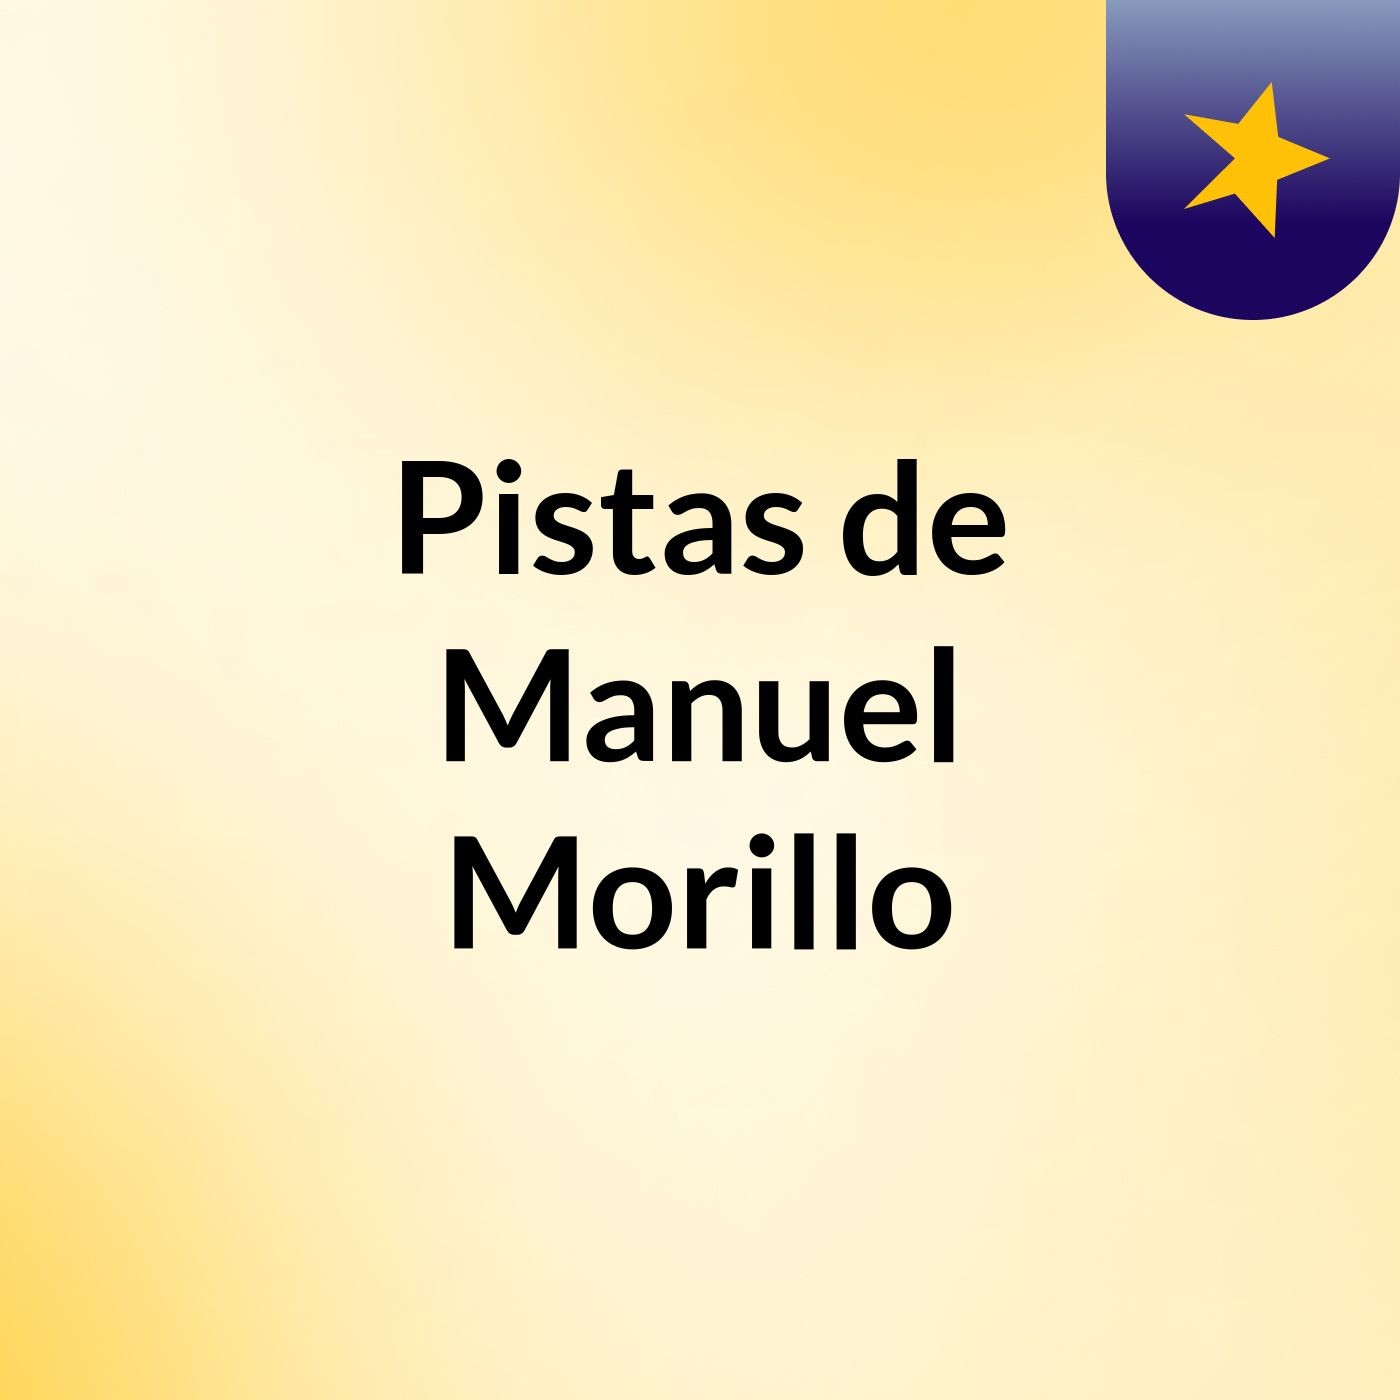 Pistas de Manuel Morillo